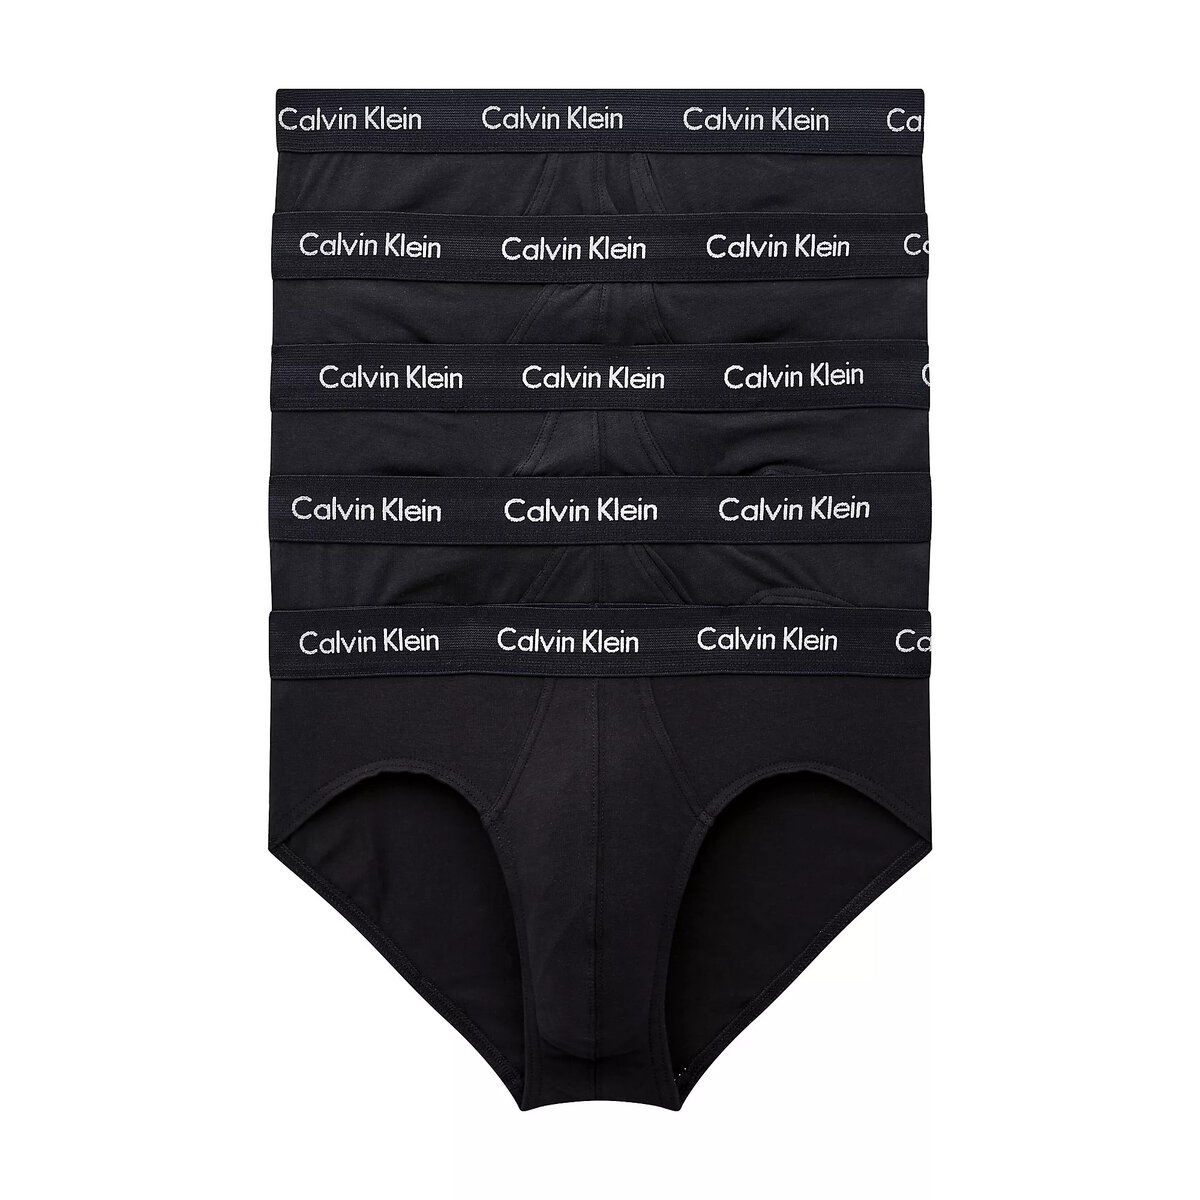 Mužské spodní prádlo KOMFORT 5KS - Calvin Klein i652_000NB2876AXWB001